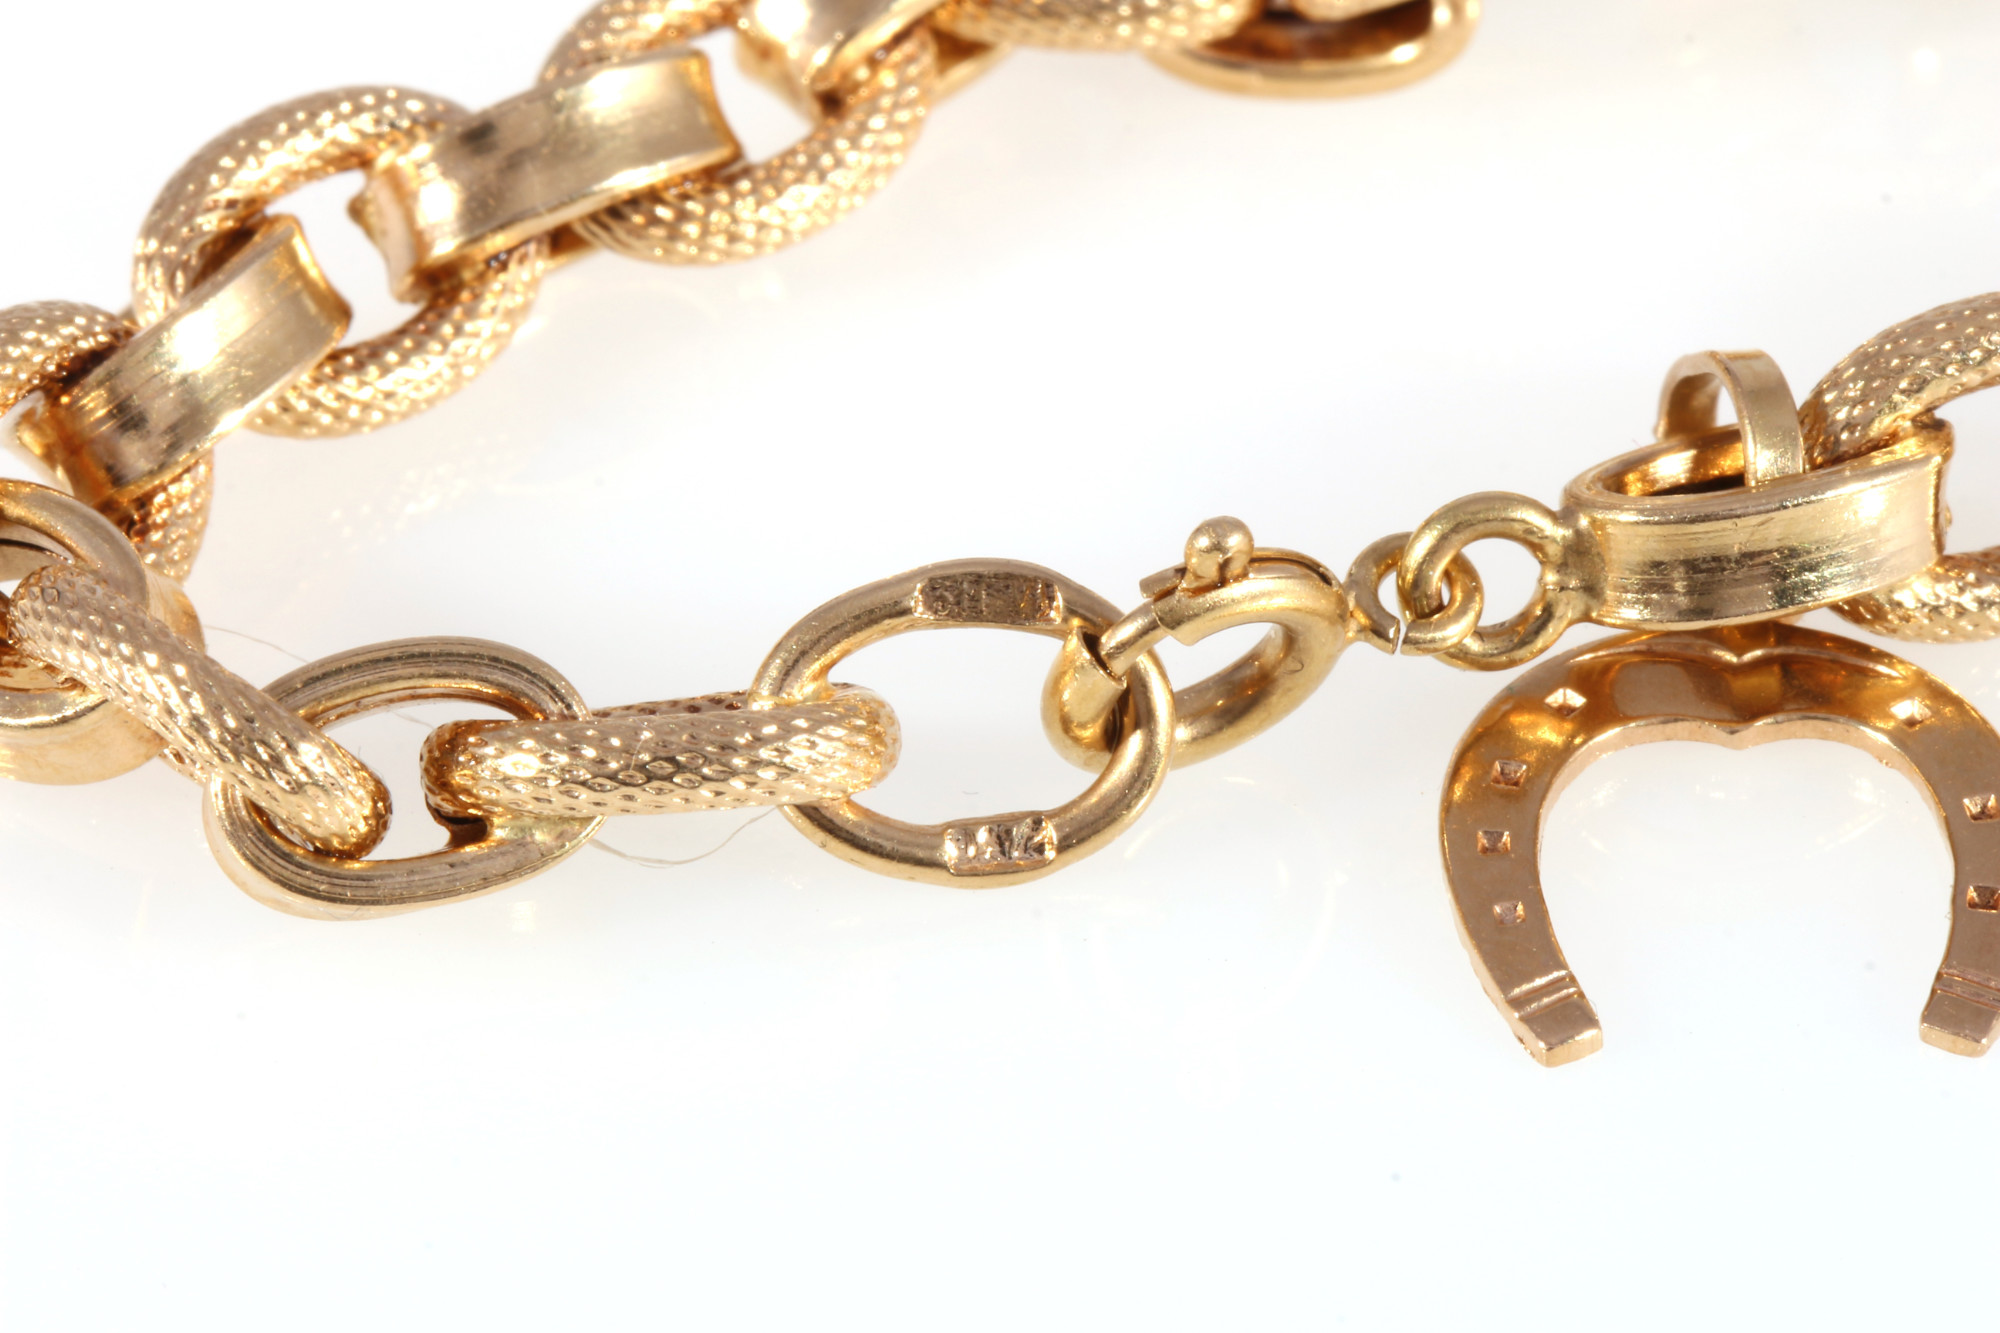 750 gold bracelet with lucky horseshoe, 18K Gold Armband mit Glückshufeisen, - Image 4 of 4